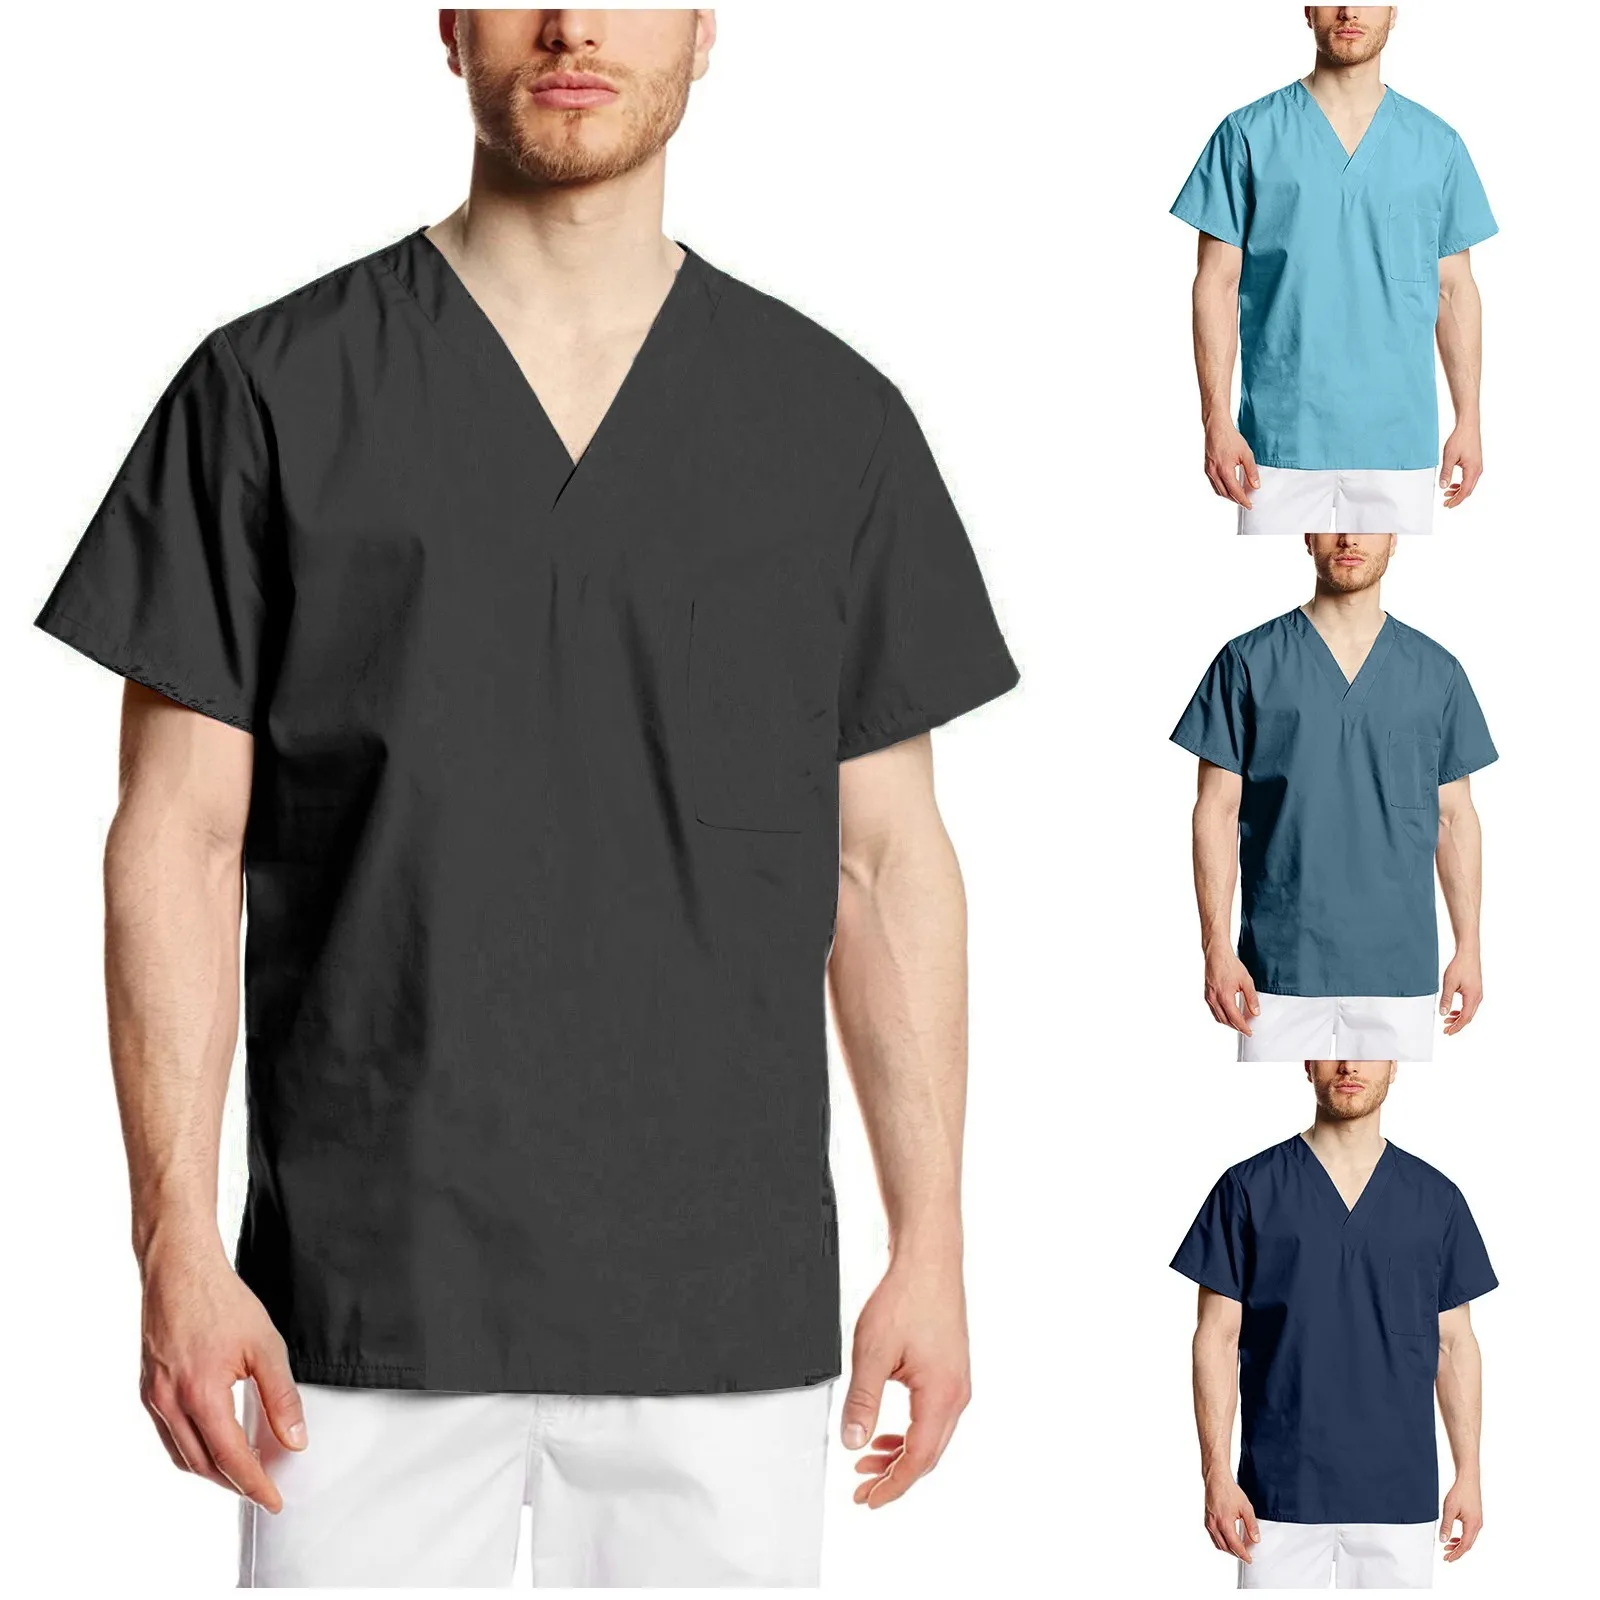 男性用の看護ユニフォーム,半袖VネックTシャツ,男性用の特大のブラウス,ヘルスケア,労働者,医療,デイケアセンター,無地